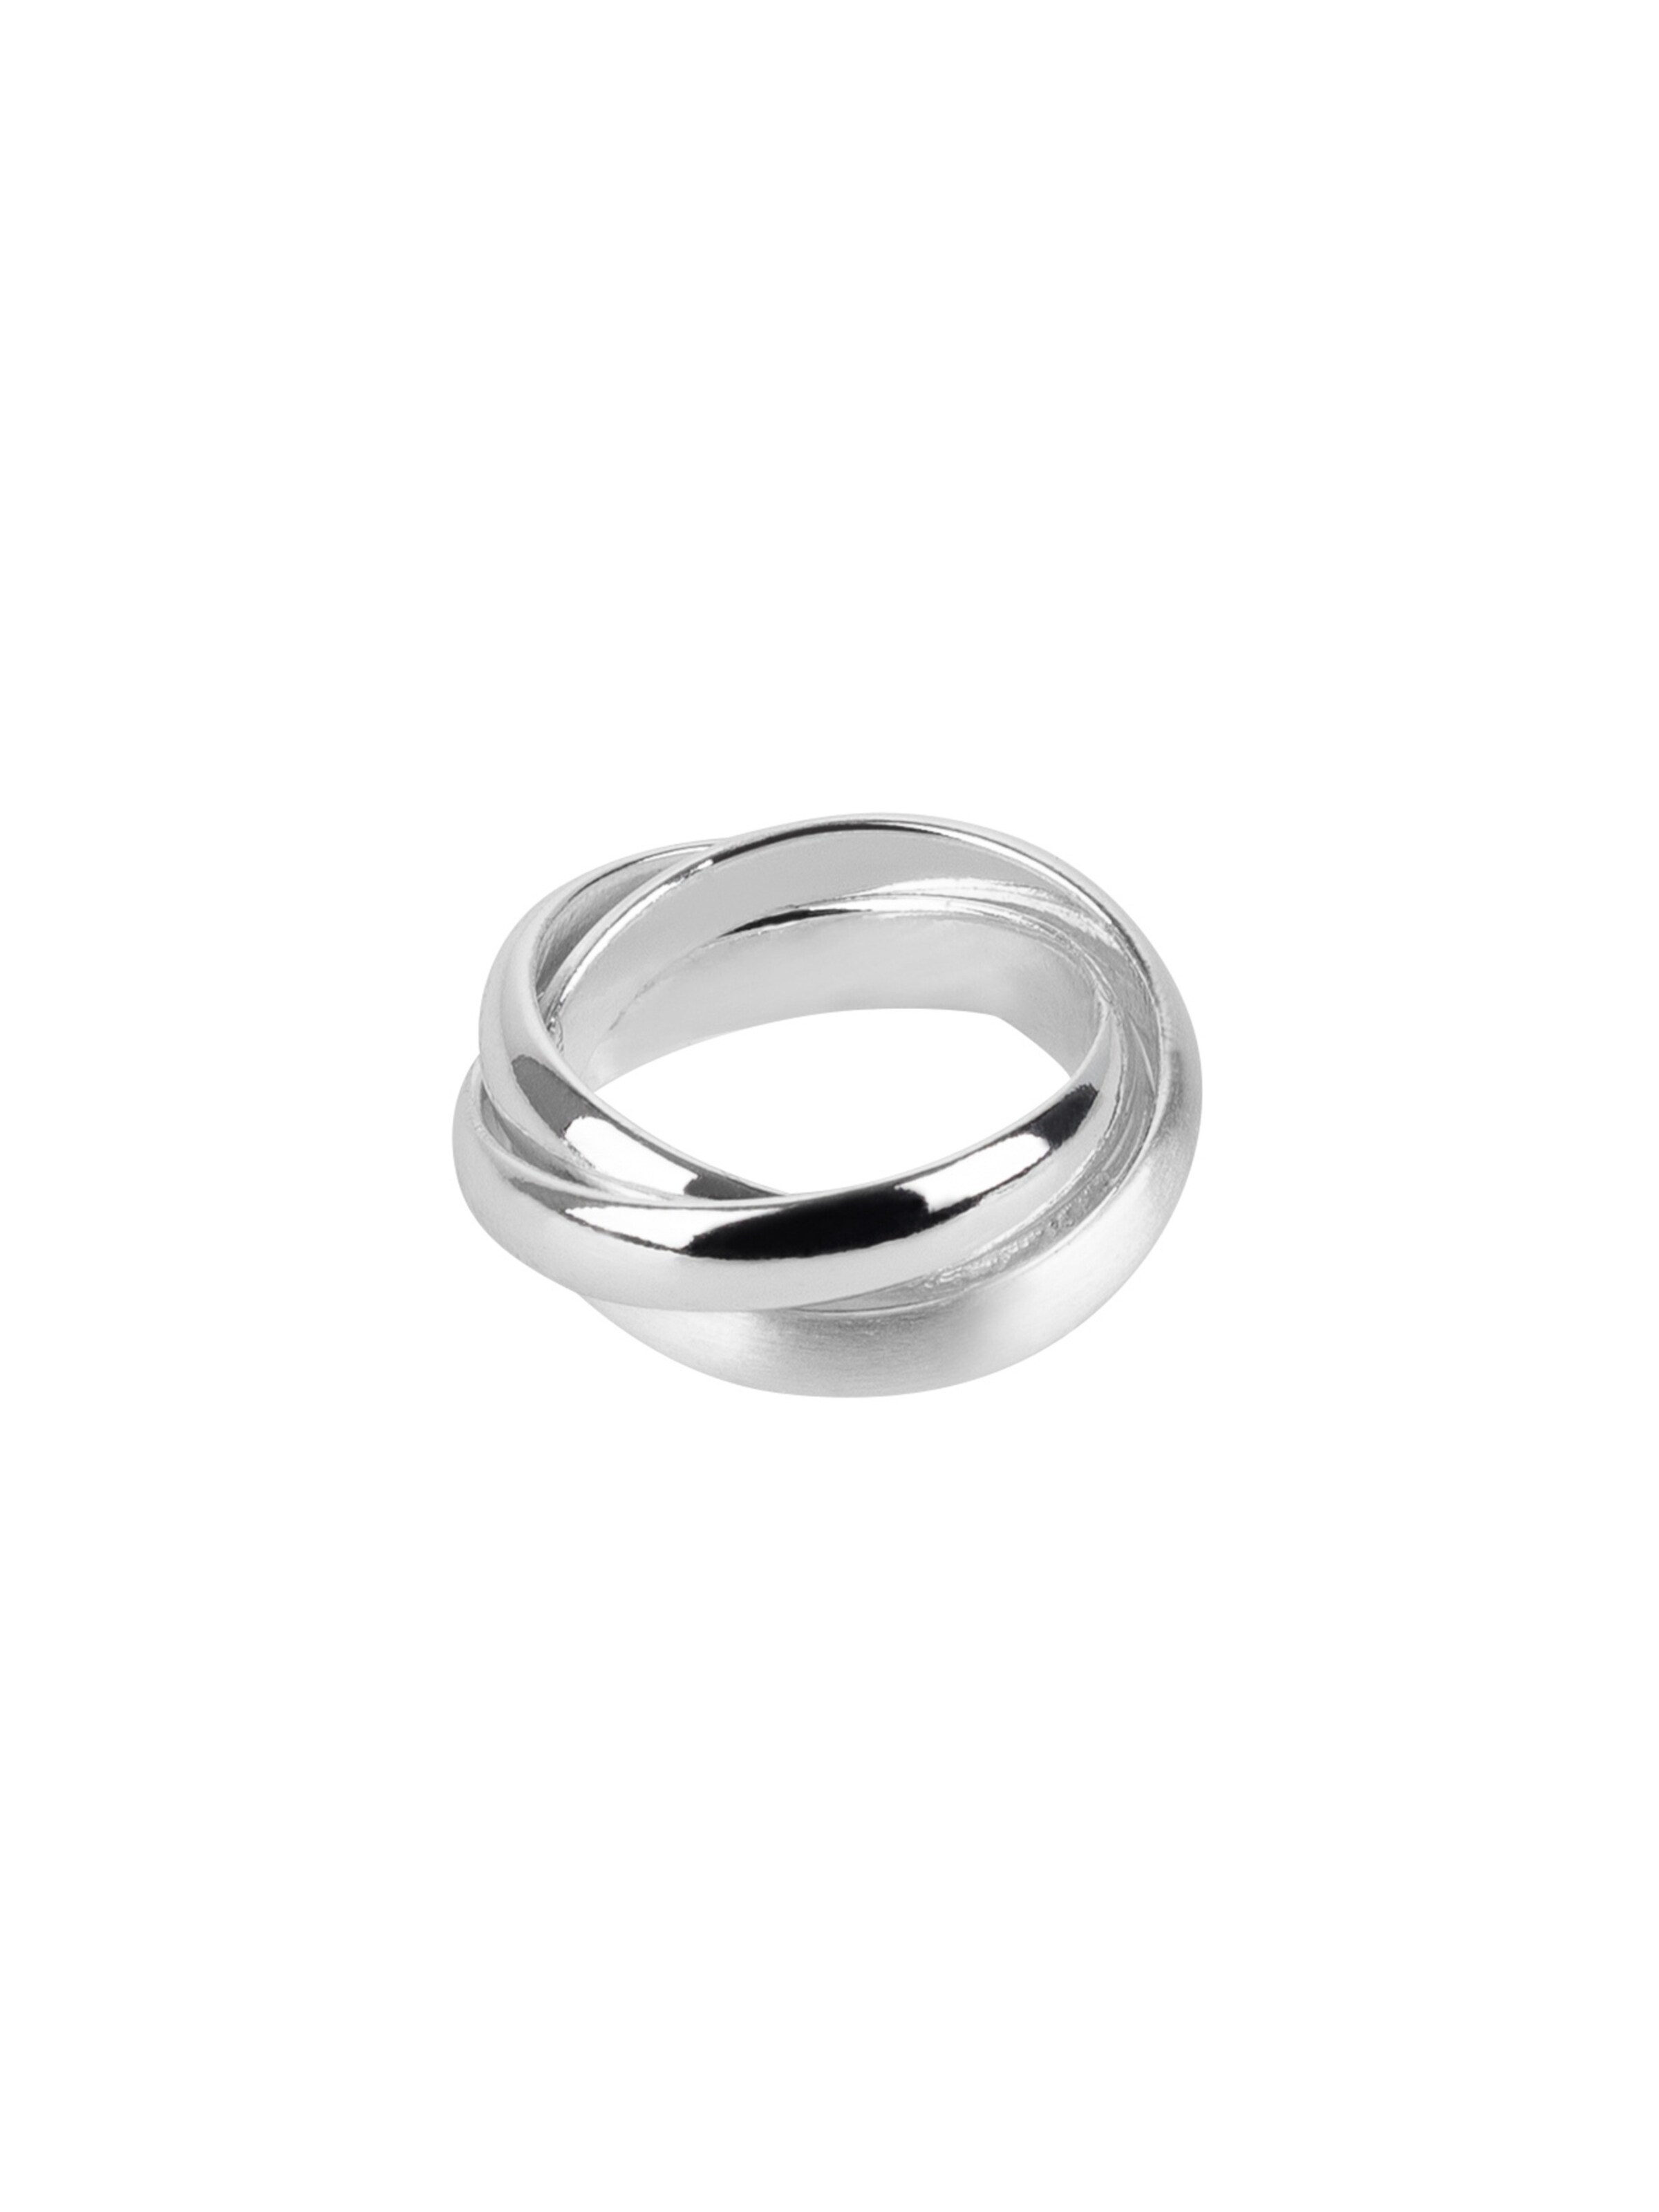 Frauen Schmuck TOSH Ring in Silber - IM75423